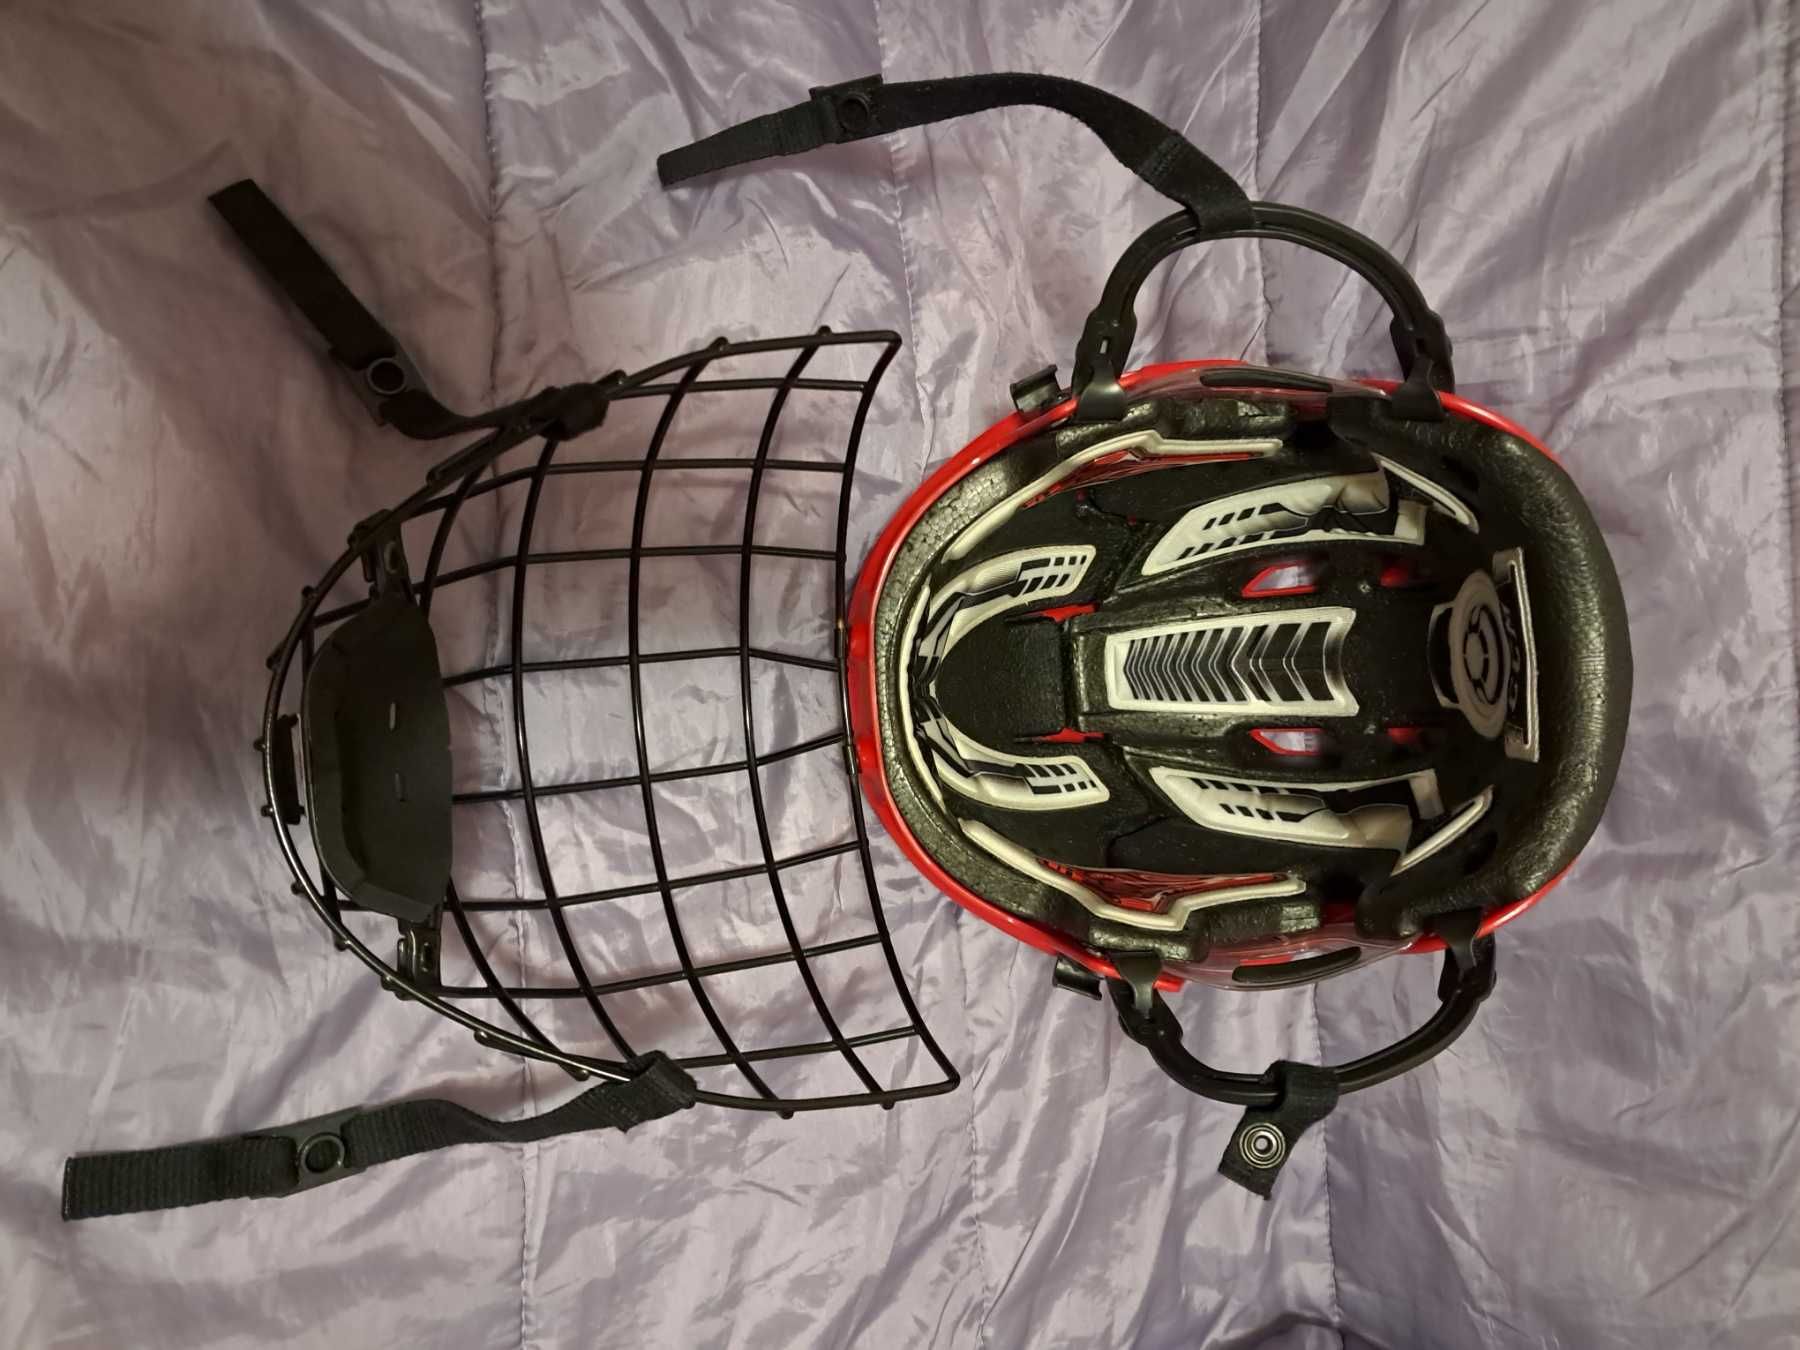 Хоккейный шлем CCM FL60